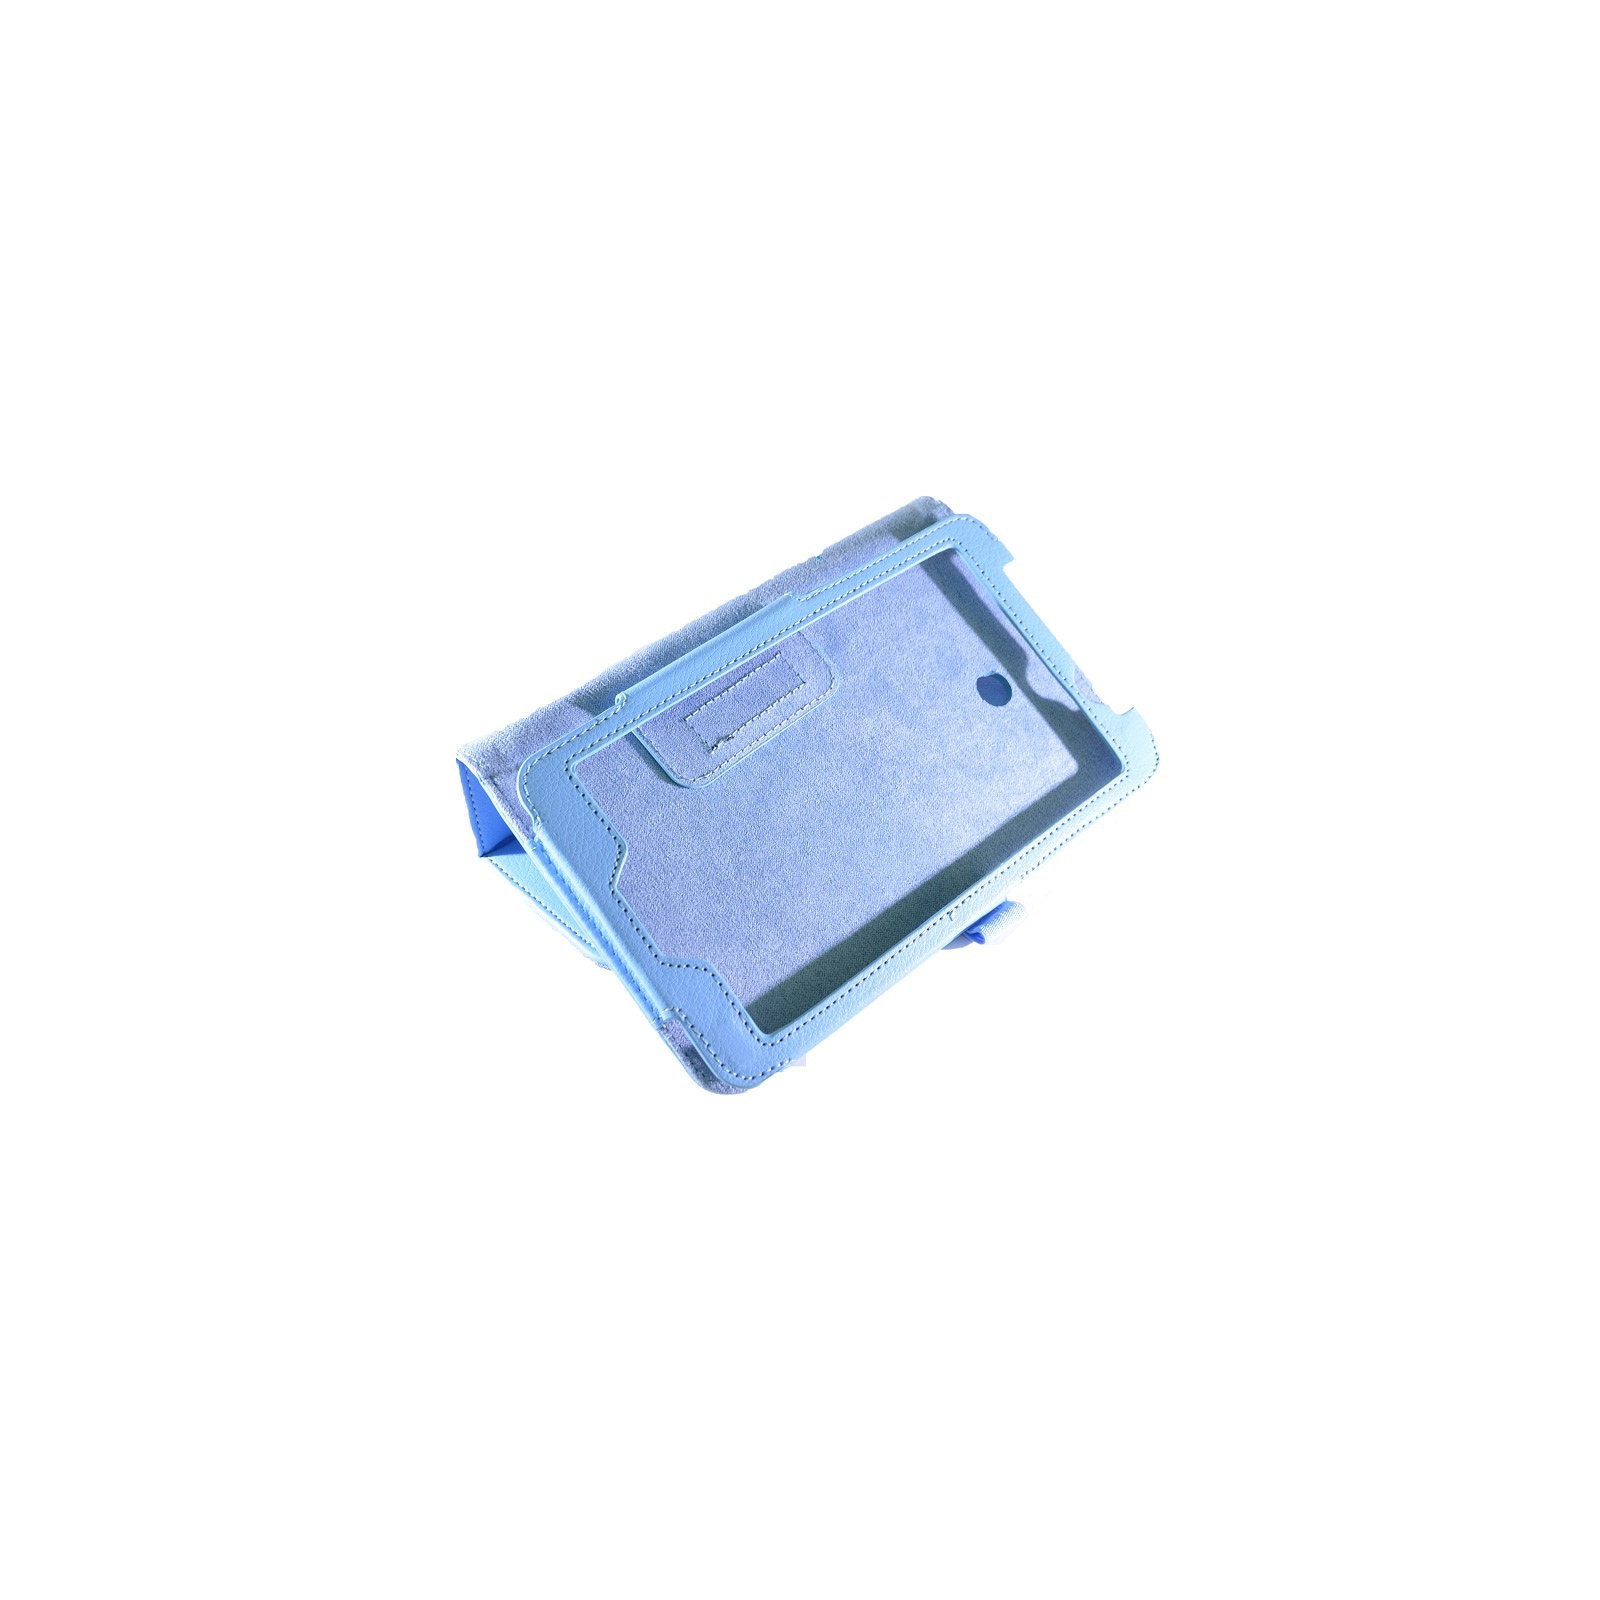 Чехол для планшета Pro-case 7" Asus MeMO Pad ME170 blue (ME170bl) изображение 4